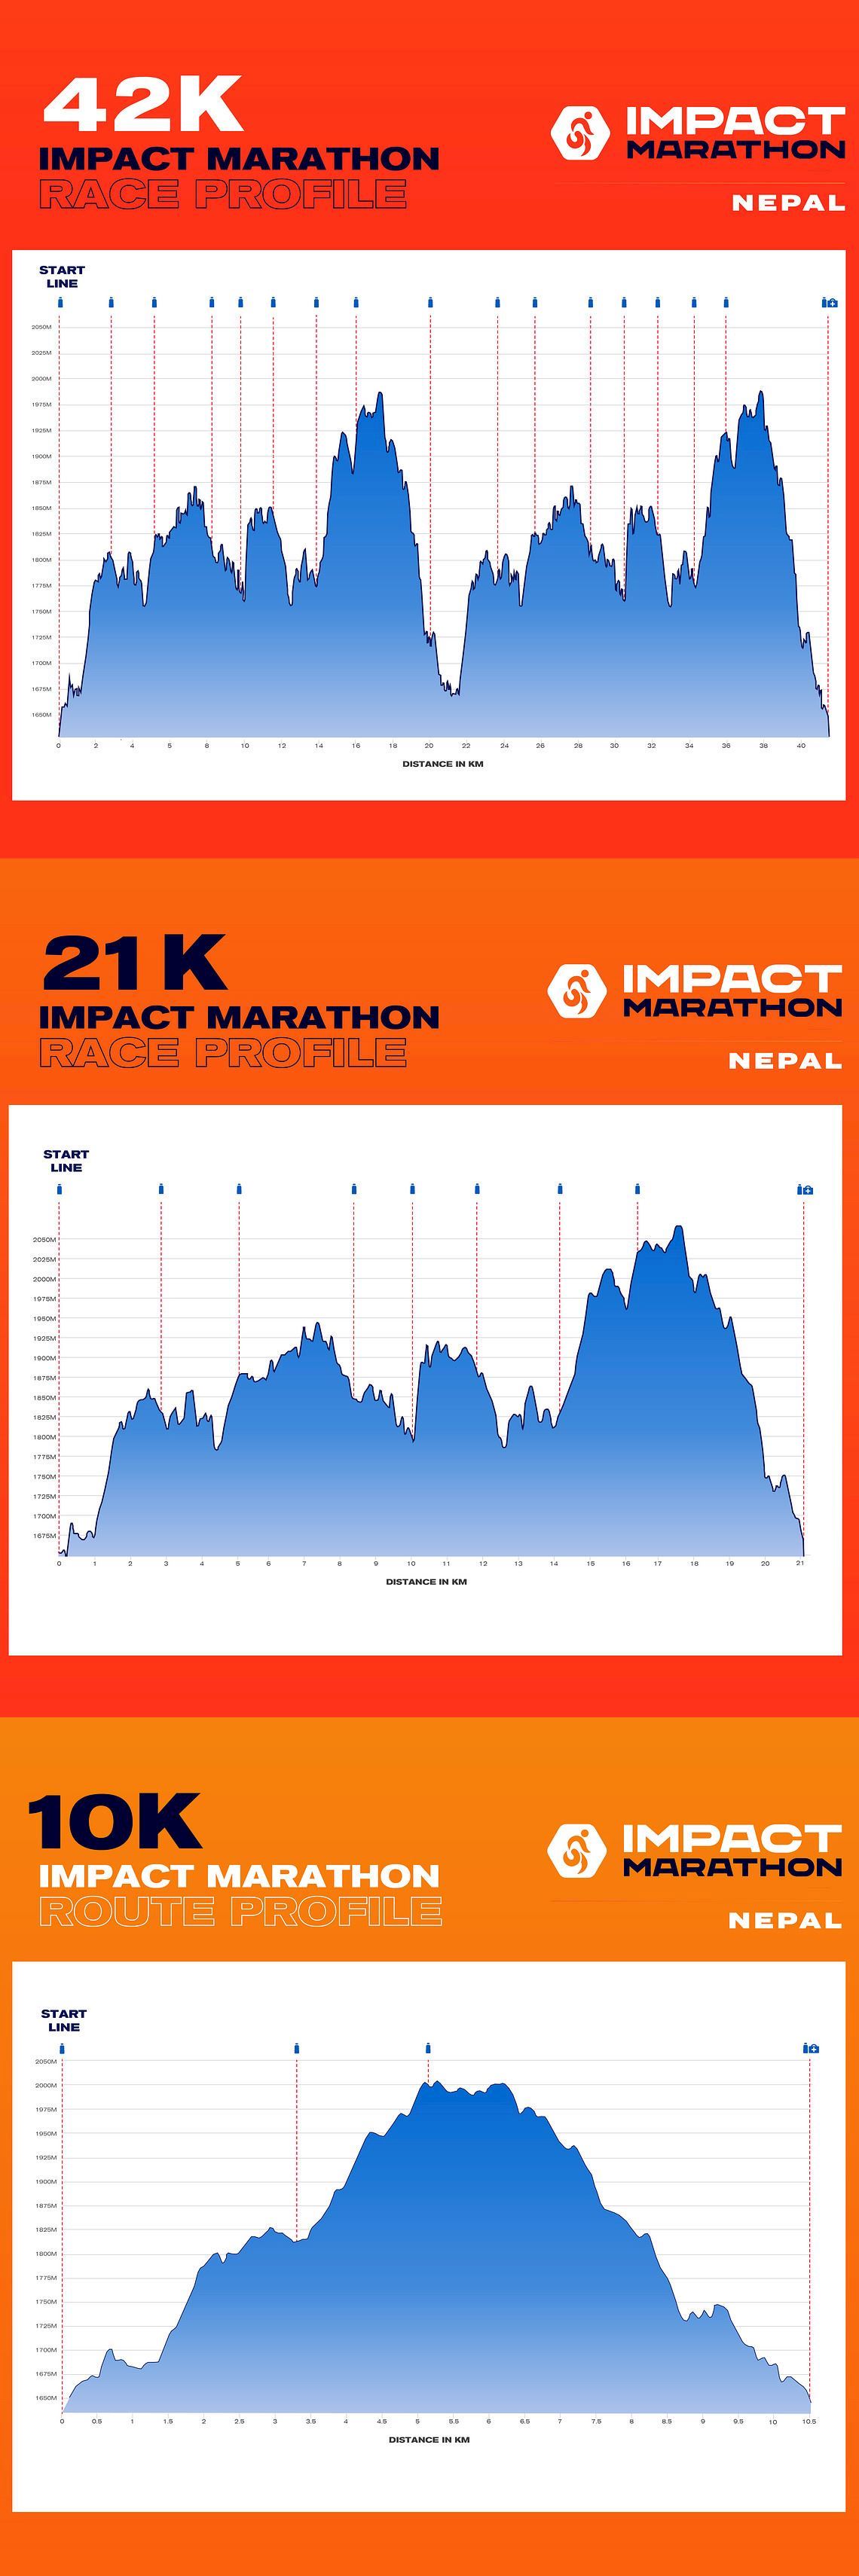 Nepal Impact Marathon MAPA DEL RECORRIDO DE